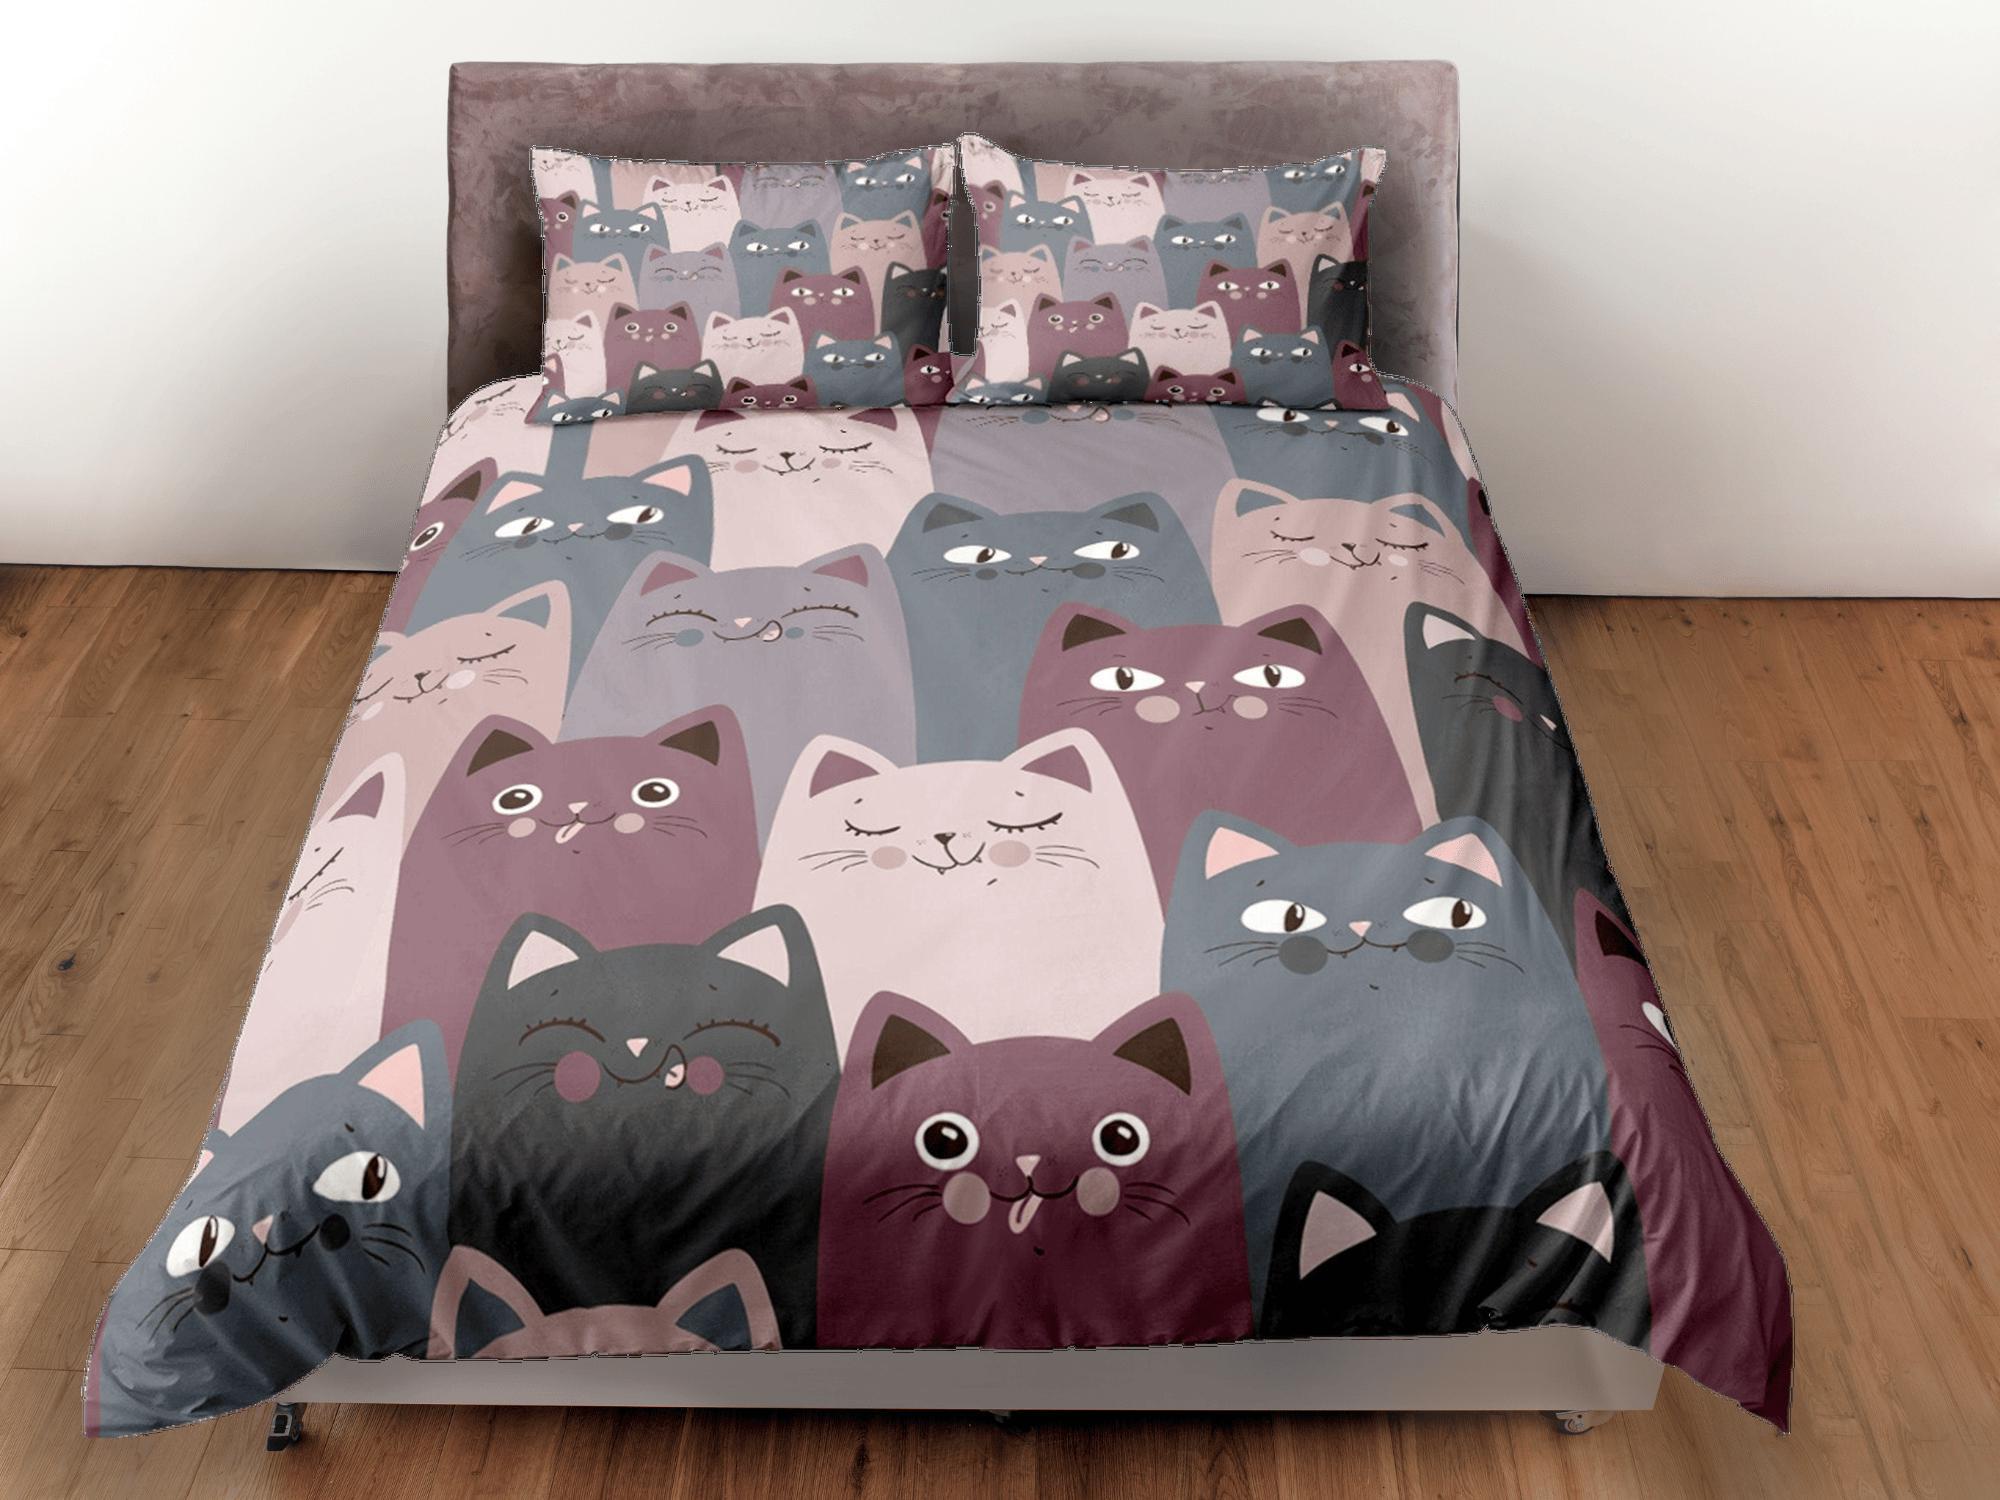 daintyduvet Cat Lover Duvet Cover Set Bedspread, Violet Grey Cute Bedding for Teens Kids Bedroom Comforter Cover